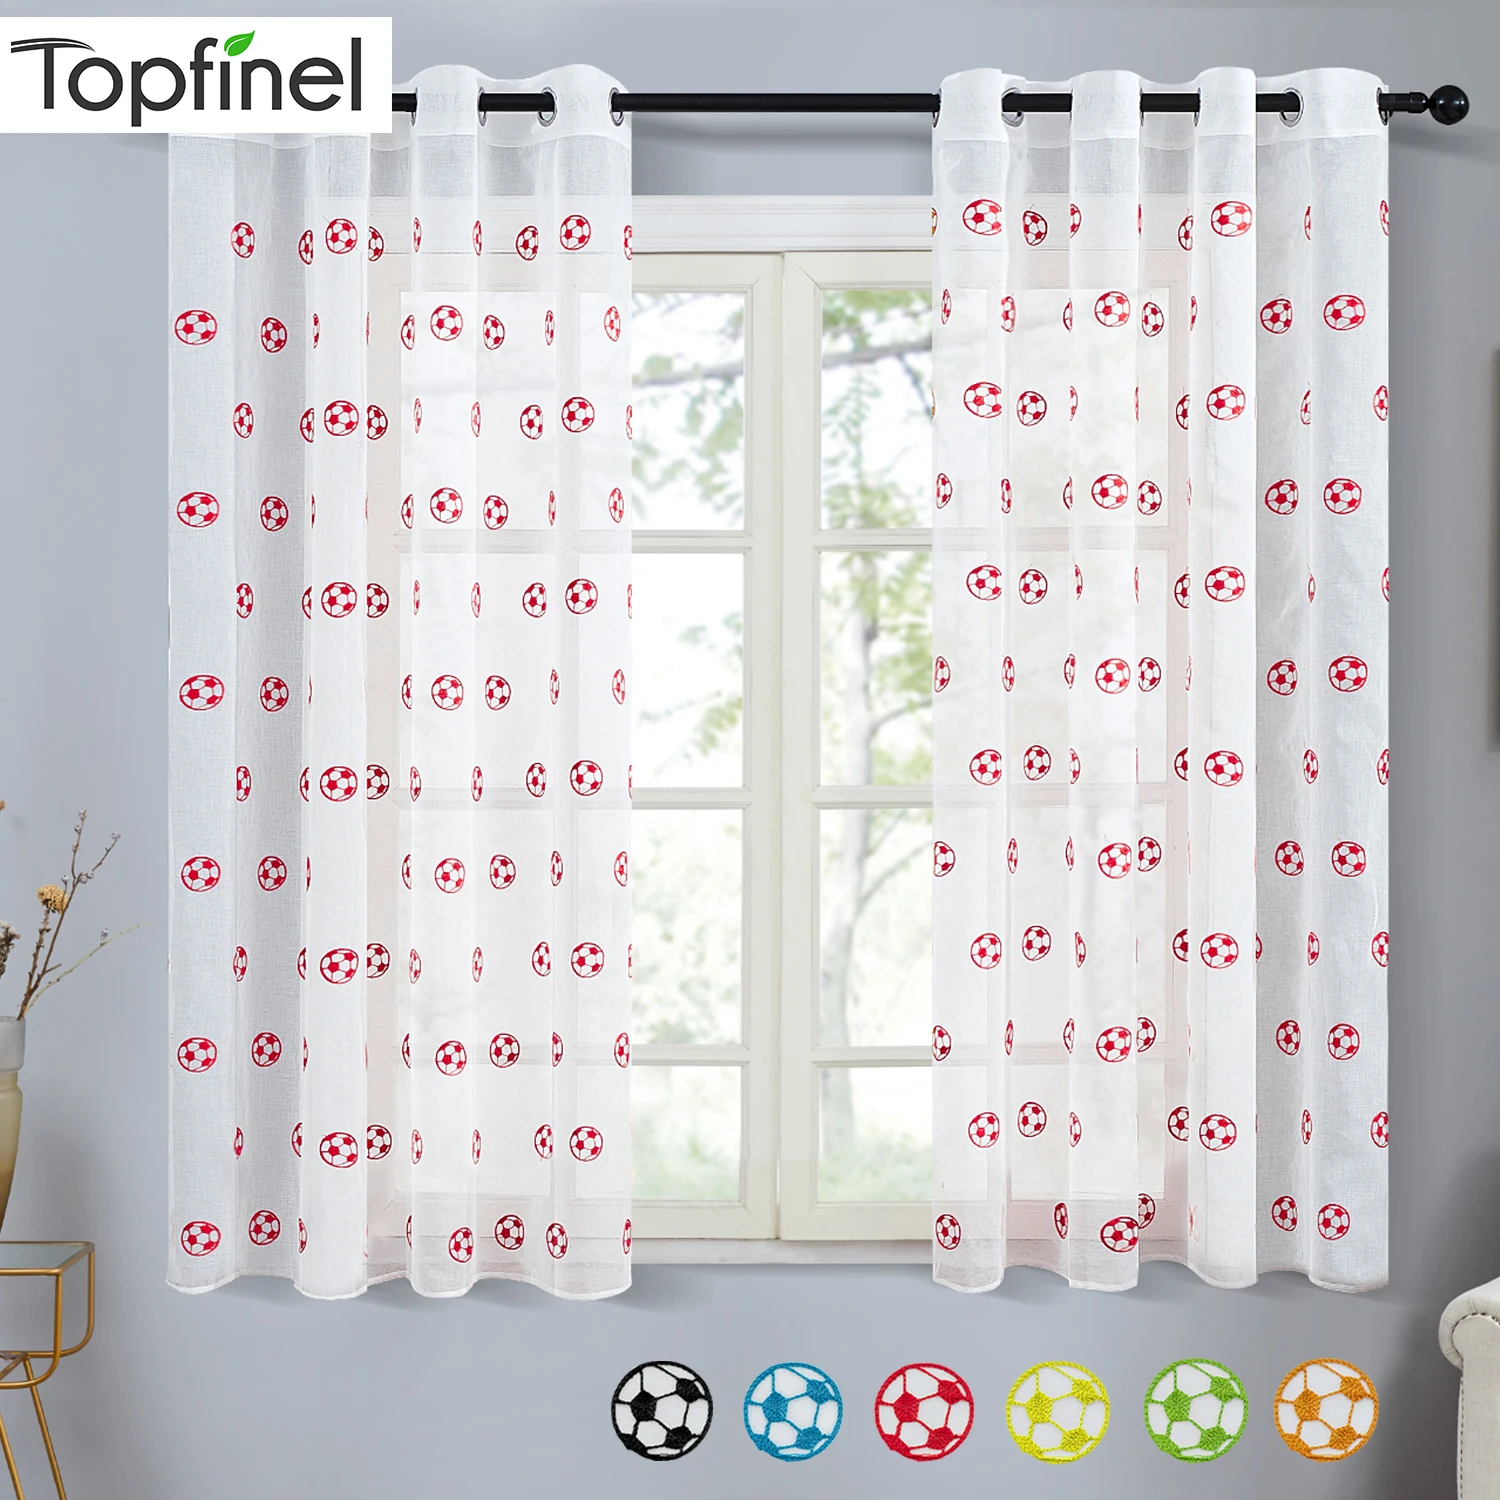 Topfinel футбол узор Короткие Прозрачные шторы для гостиной, спальни, для мальчиков, комната вышитые окна лечение вуаль Tulles